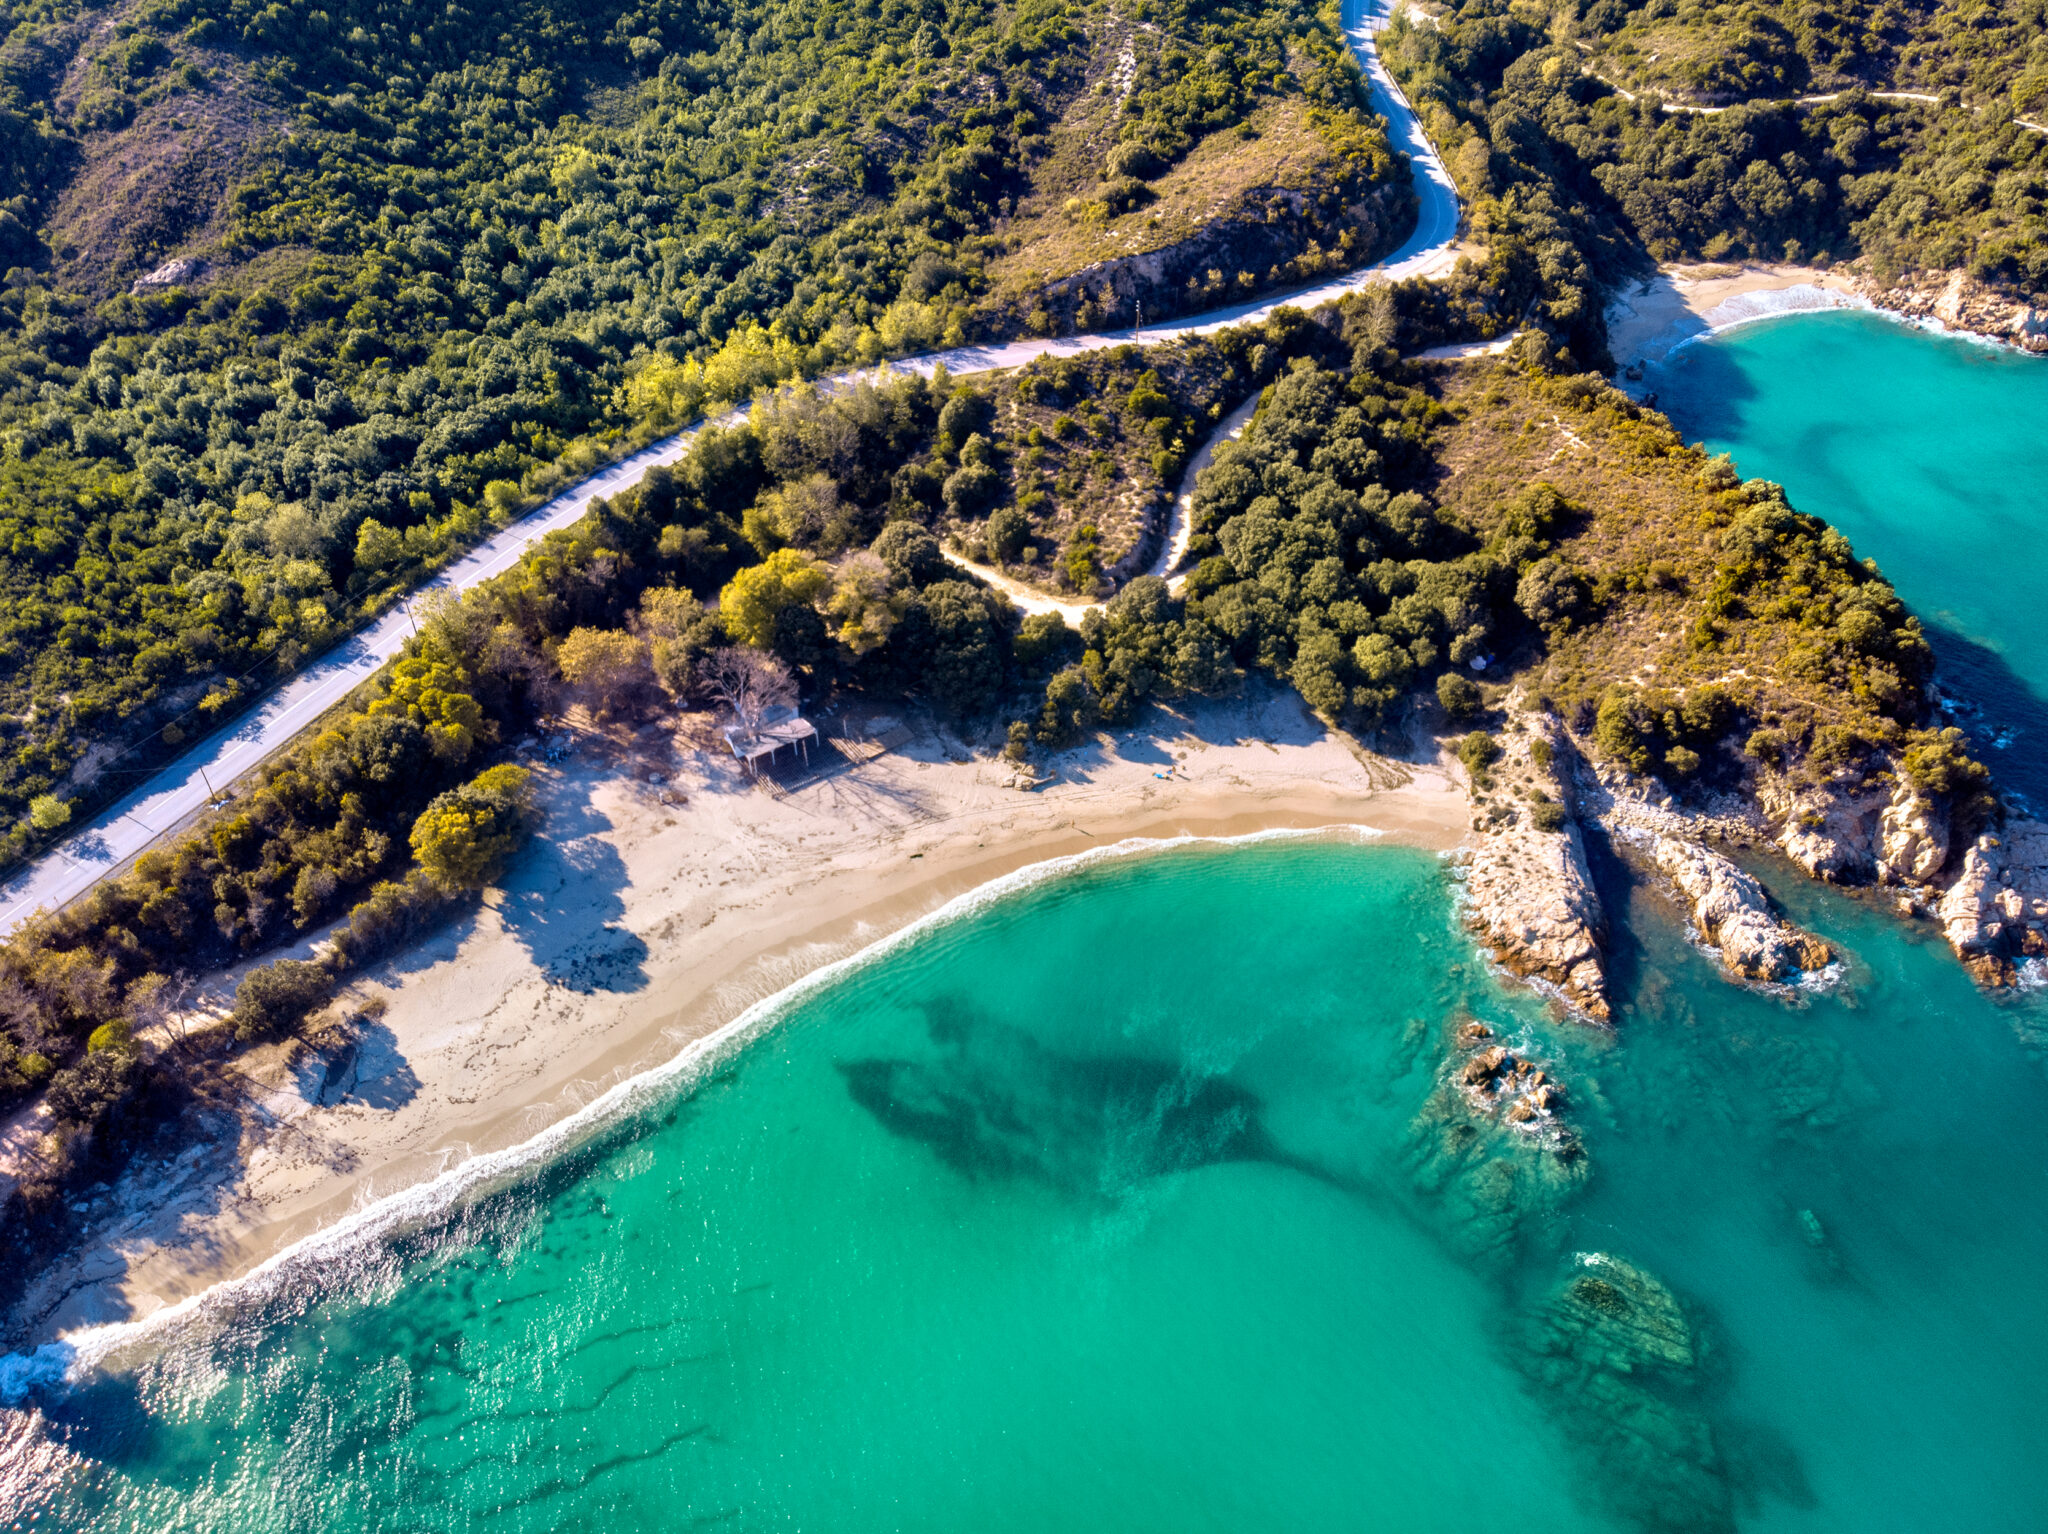 Ανατολική Χαλκιδική: Ένας εναλλακτικός προορισμός για απολαυστικές  διαδρομές στη φύση και την ιστορία | travel.gr